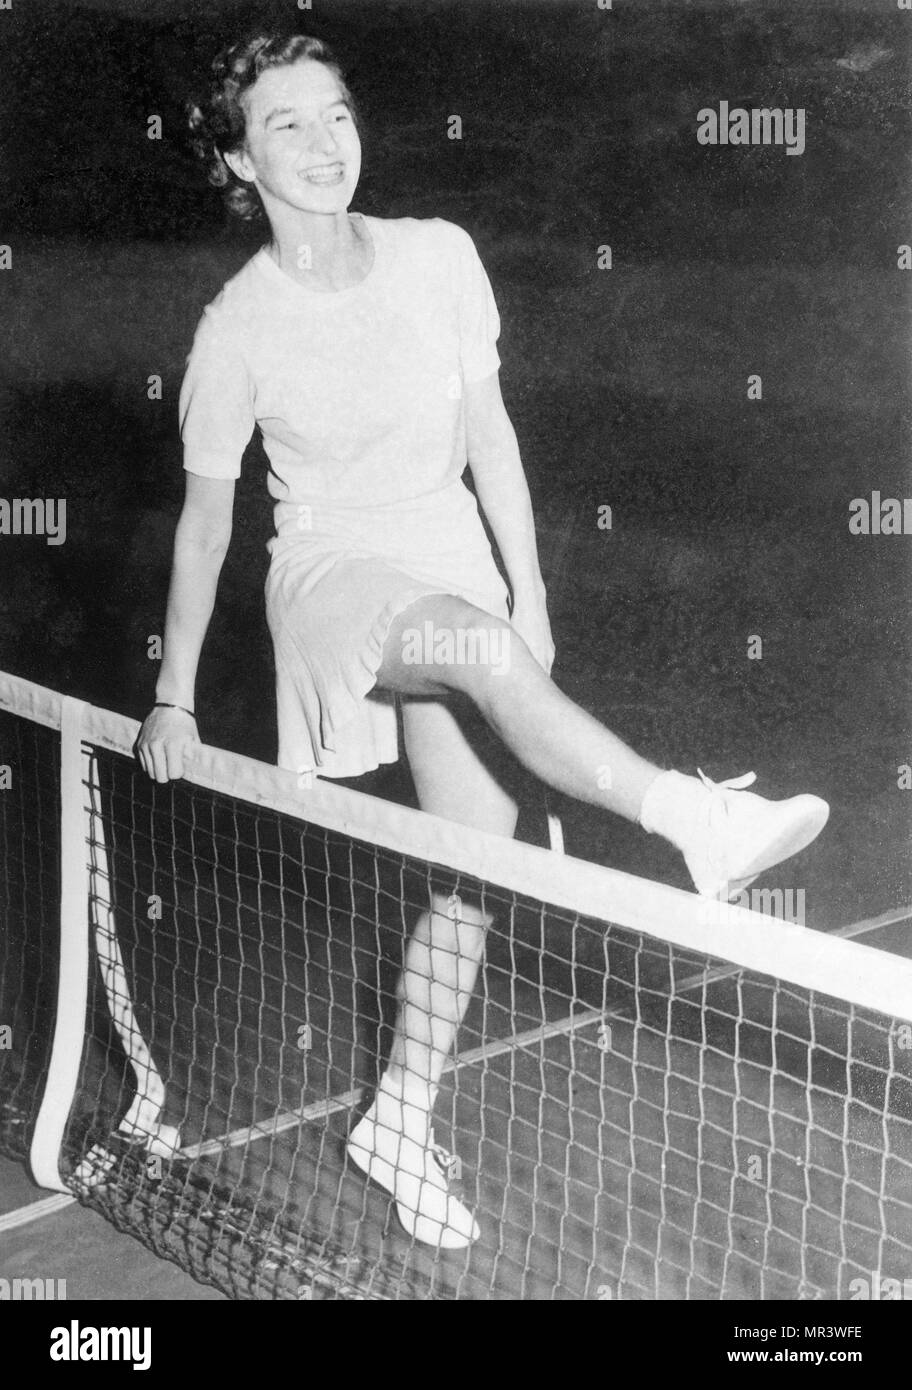 Mary Hardwick, joueur de tennis français (8 septembre 1913 - 18 décembre 2001) Le premier joueur de tennis anglais à son tour professionnel. Image prise au Madison Square Garden de New York le 9 janvier 1941. Banque D'Images